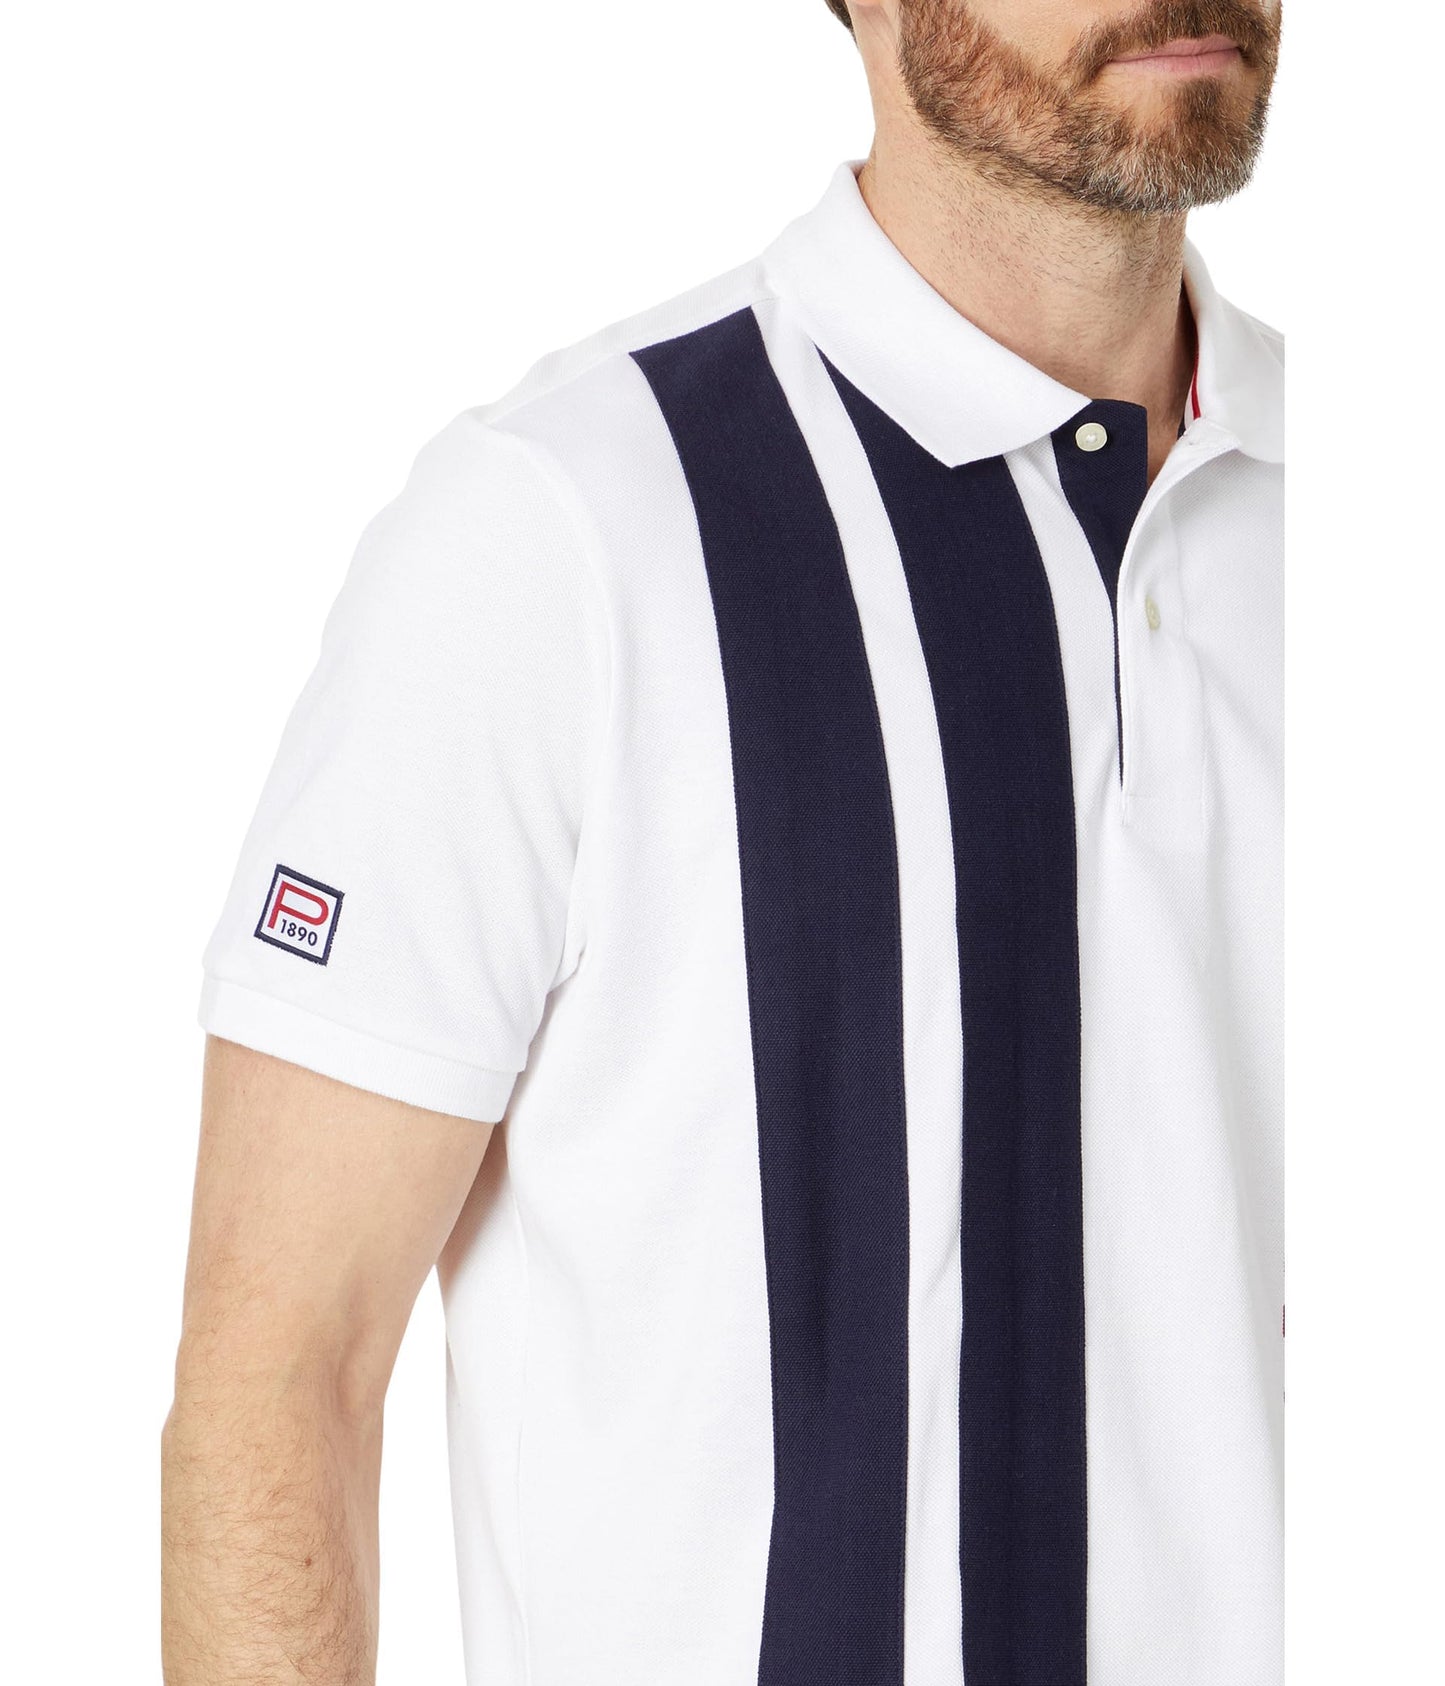 U.S. POLO ASSN. Men's Color Block Vertical Graphic Pique Short Sleeve Polo Shirt, White Amazon